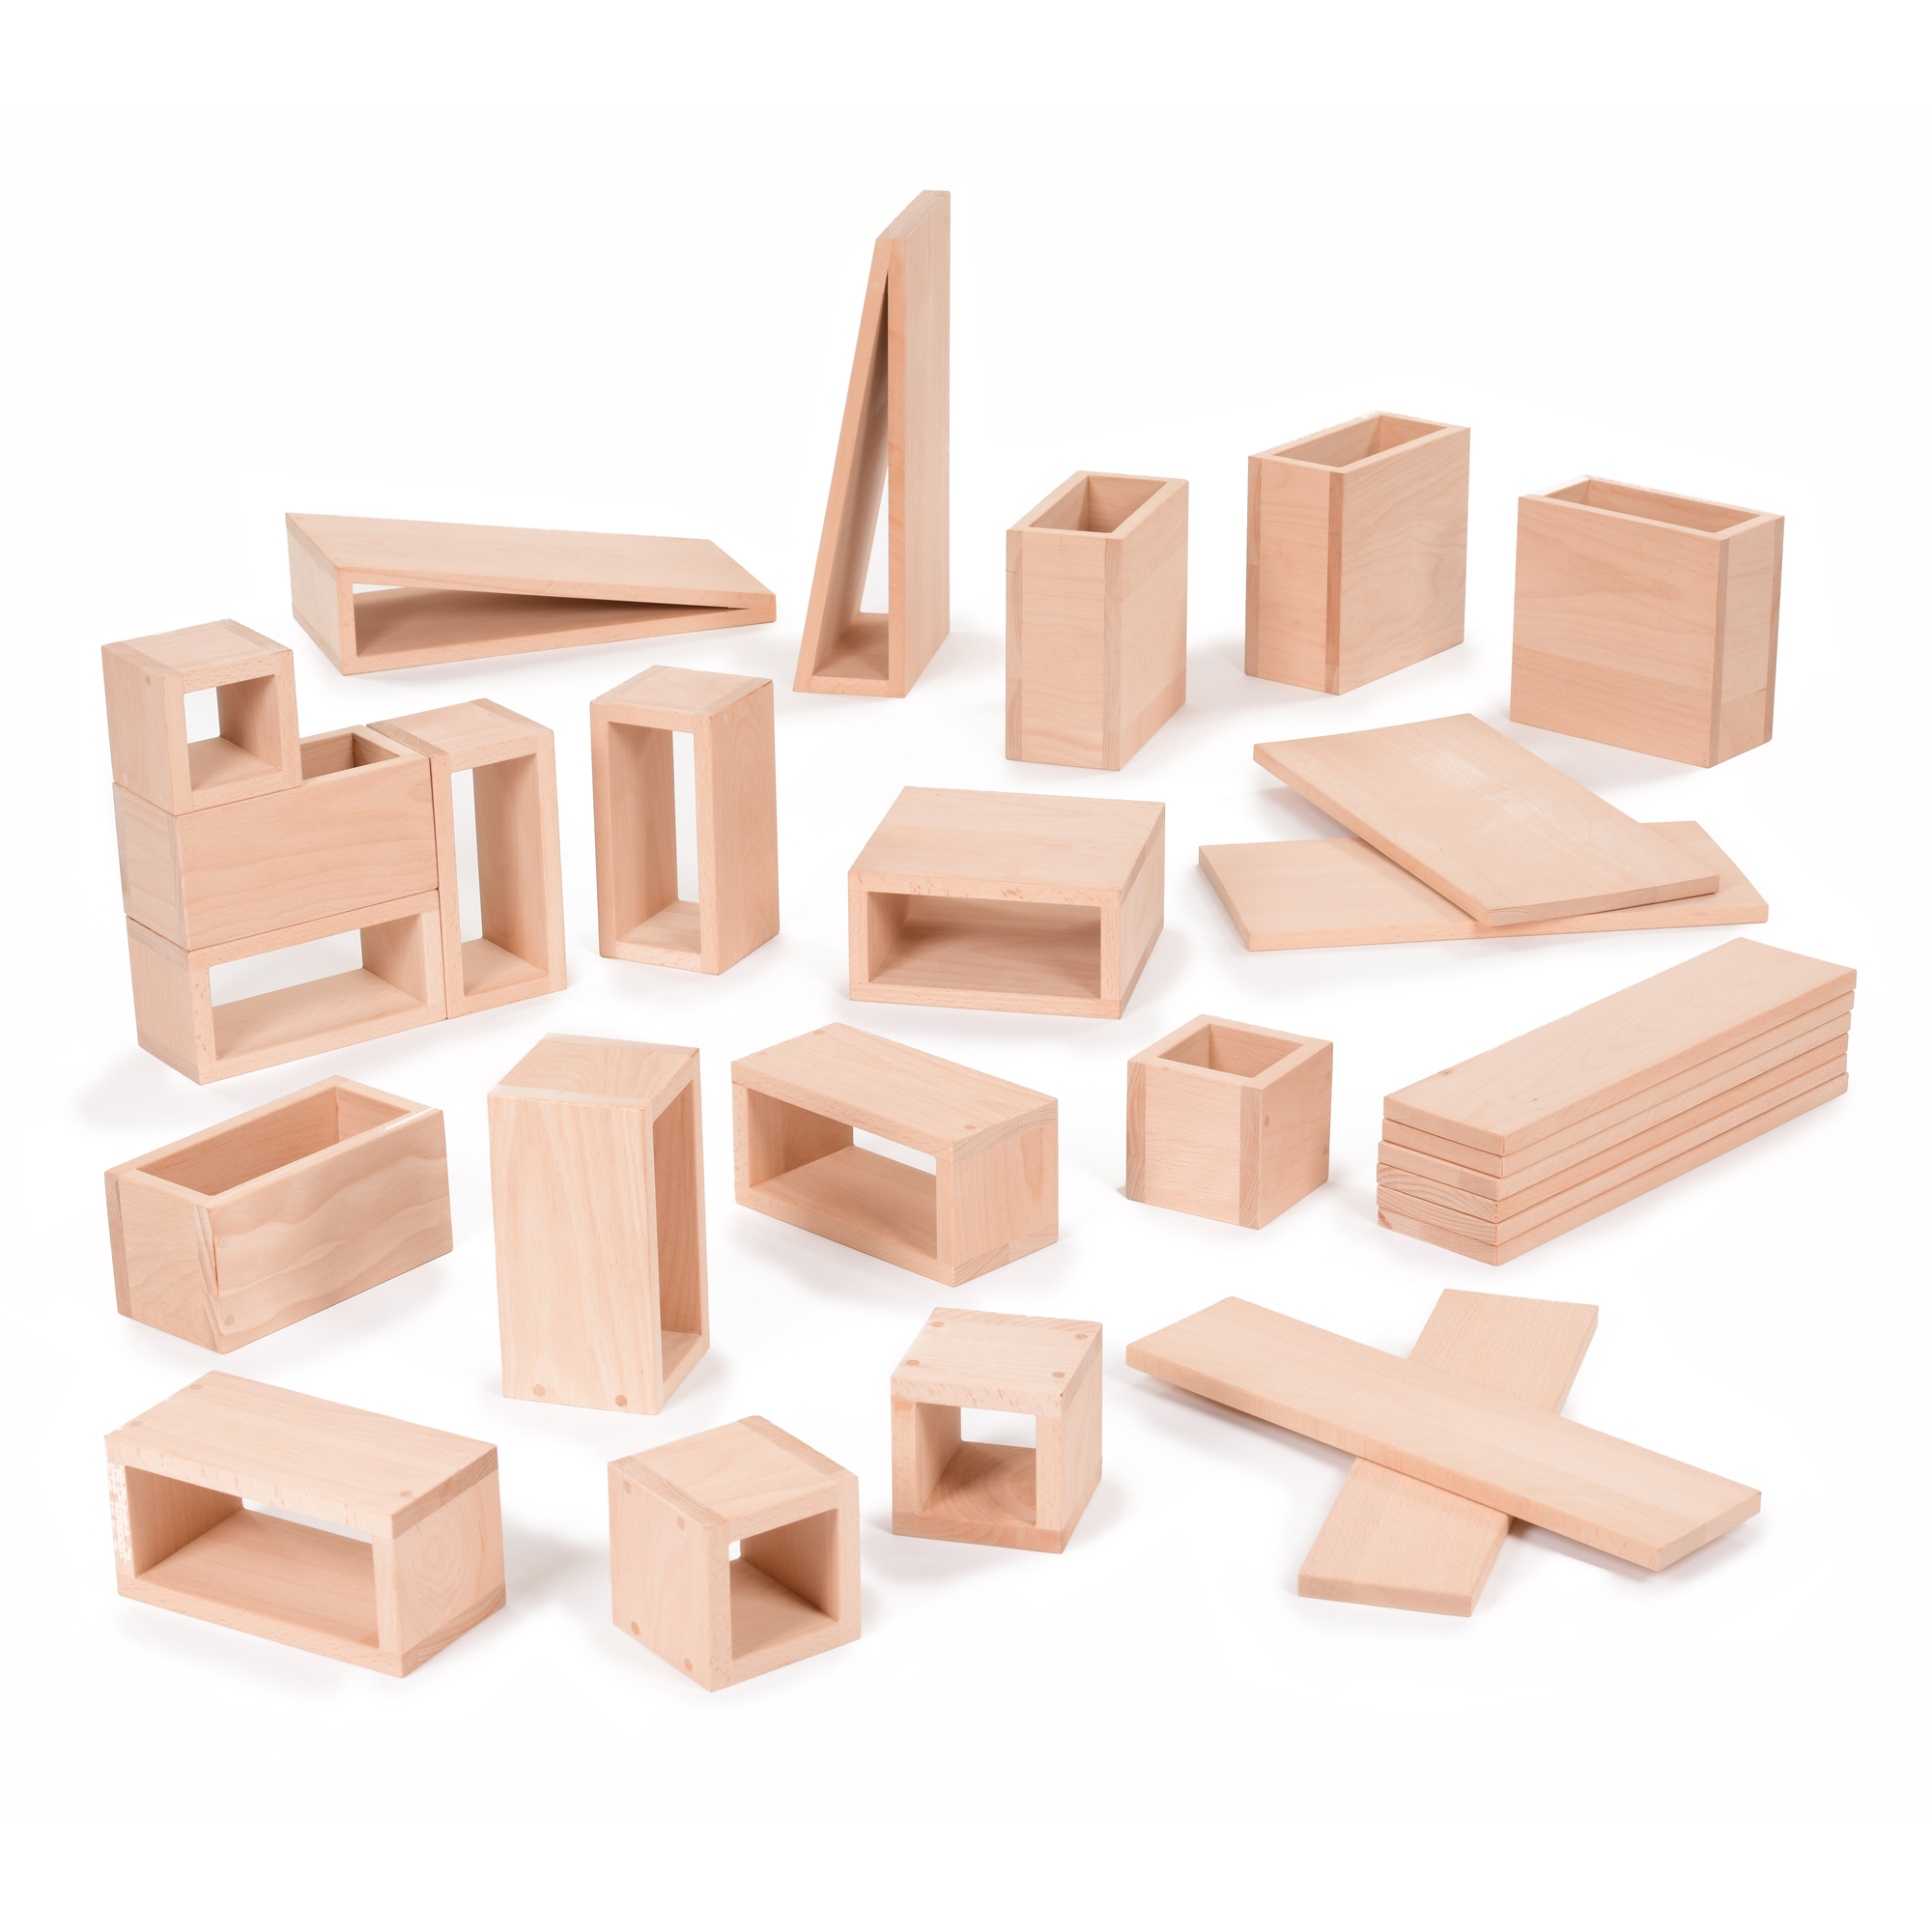 kids large wooden blocks